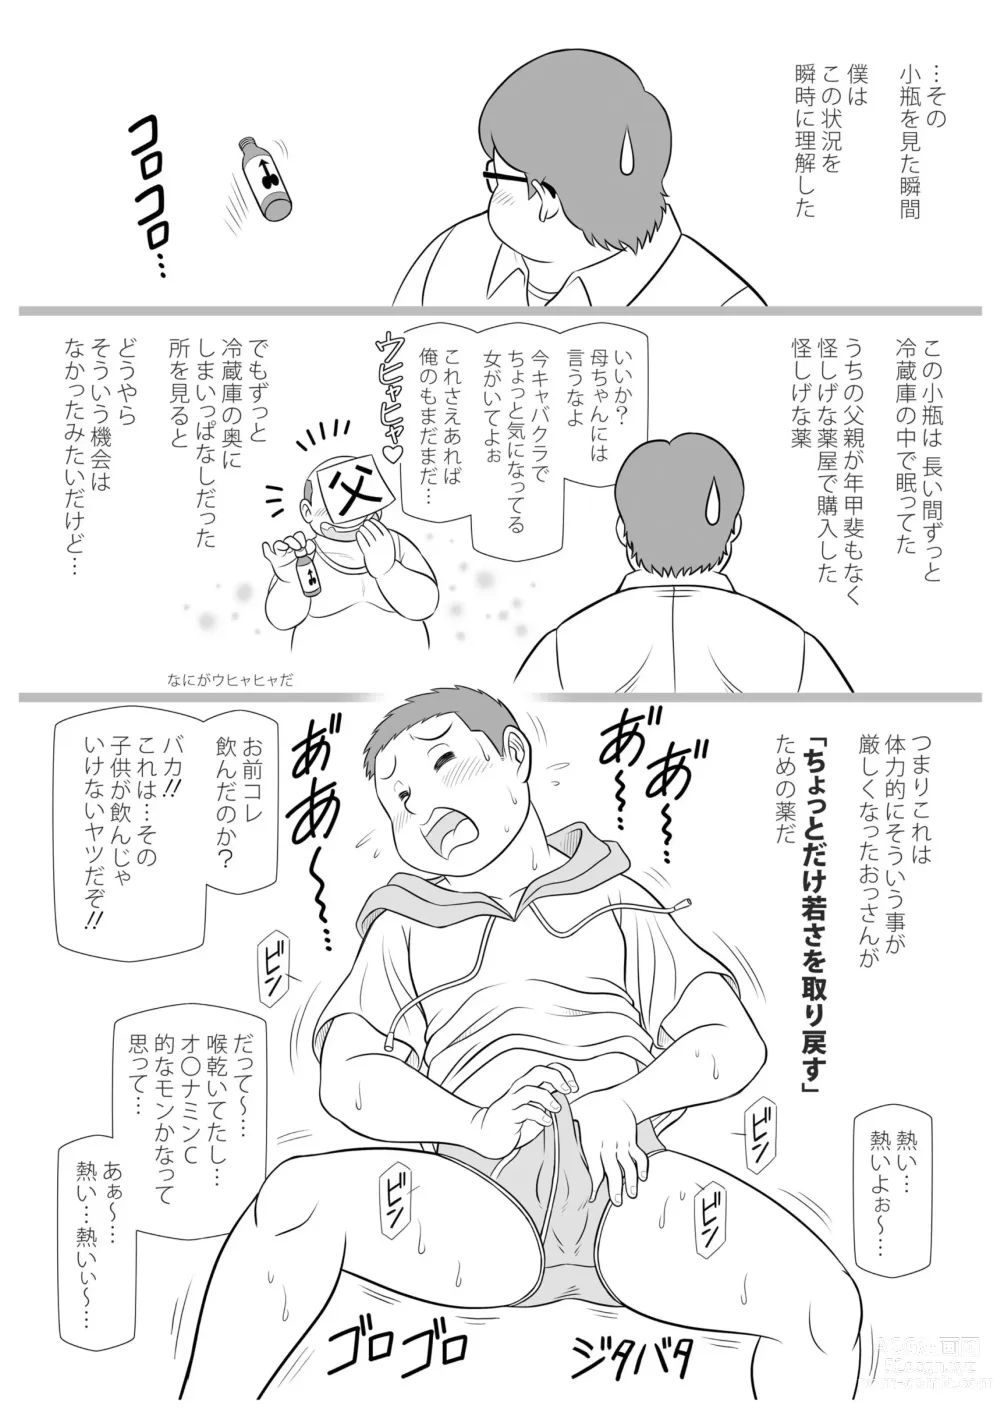 Page 6 of doujinshi SNAP SHOT